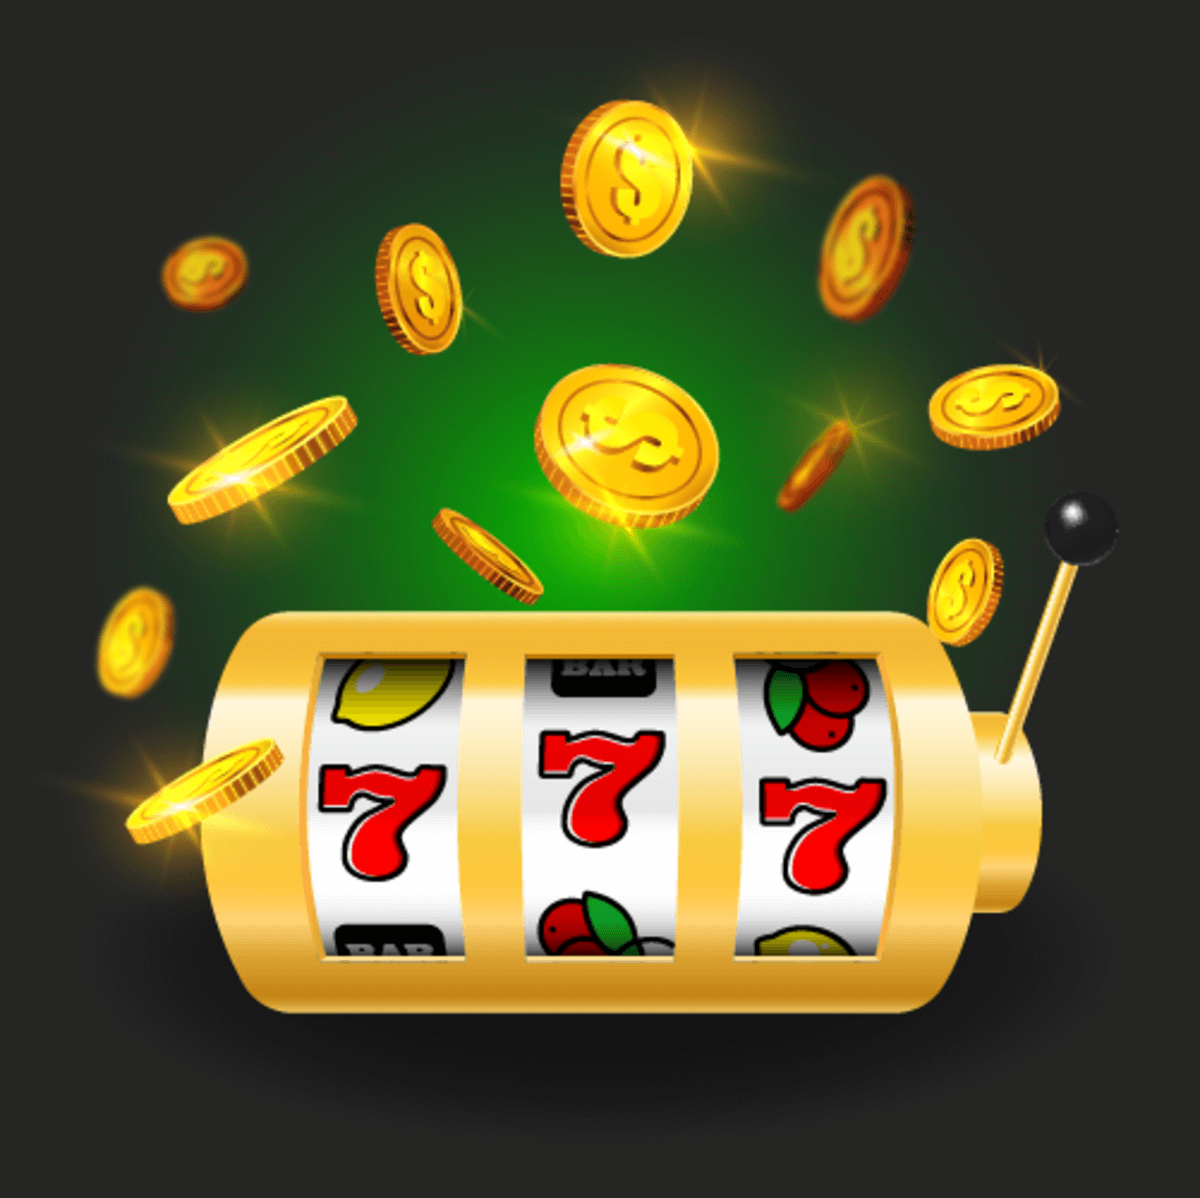 maquinas tragamonedas gratis en casinos